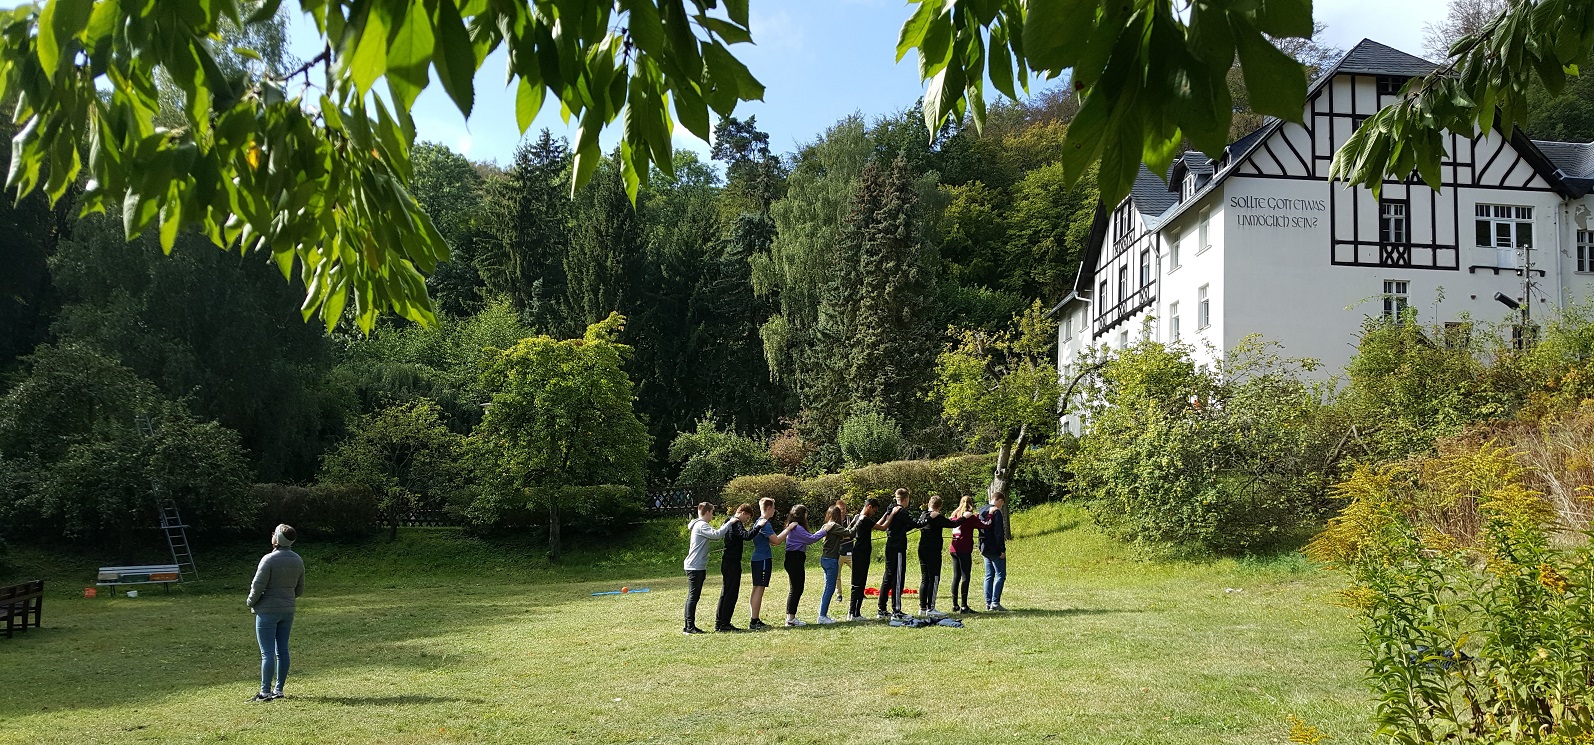 Gäste- und Tagungshaus Die Malche, eine Gruppe übt im Garten Vertrauen, Jugendliche legen einander die Hände auf die Schultern und teilen Schrit für Schritt den Weg, Foto: Gundula Eichler